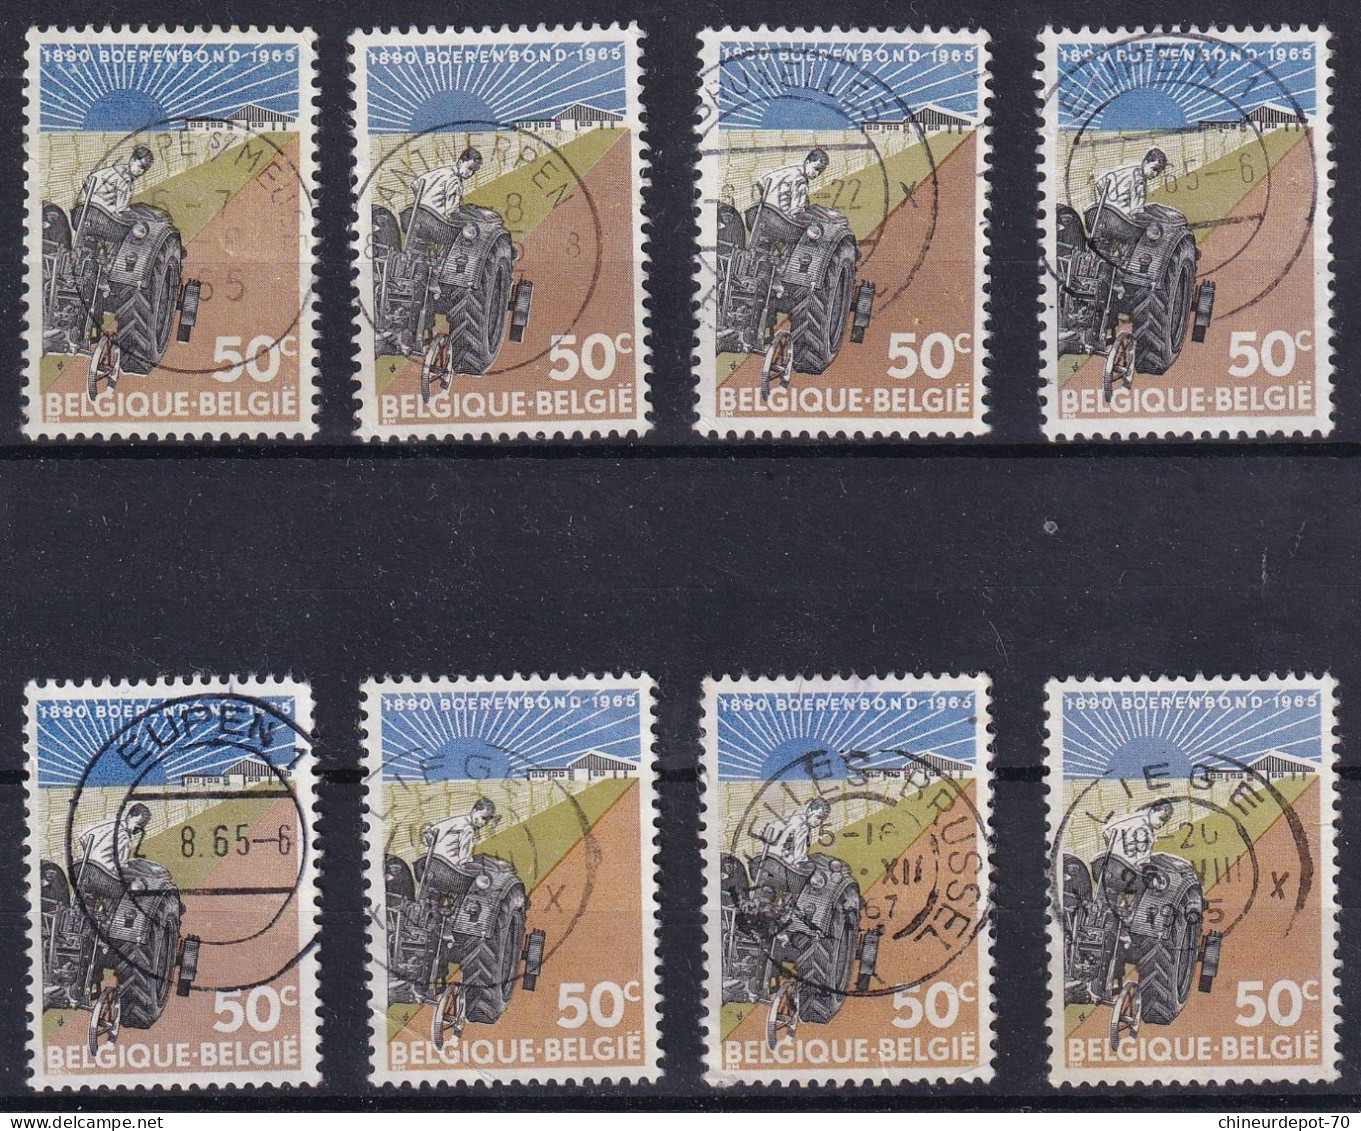 BOERENBOND 1965 JEMEPPE SUR MEUSE ANTWERPEN 8 BRUXELLES EUPEN LIEGE - Used Stamps